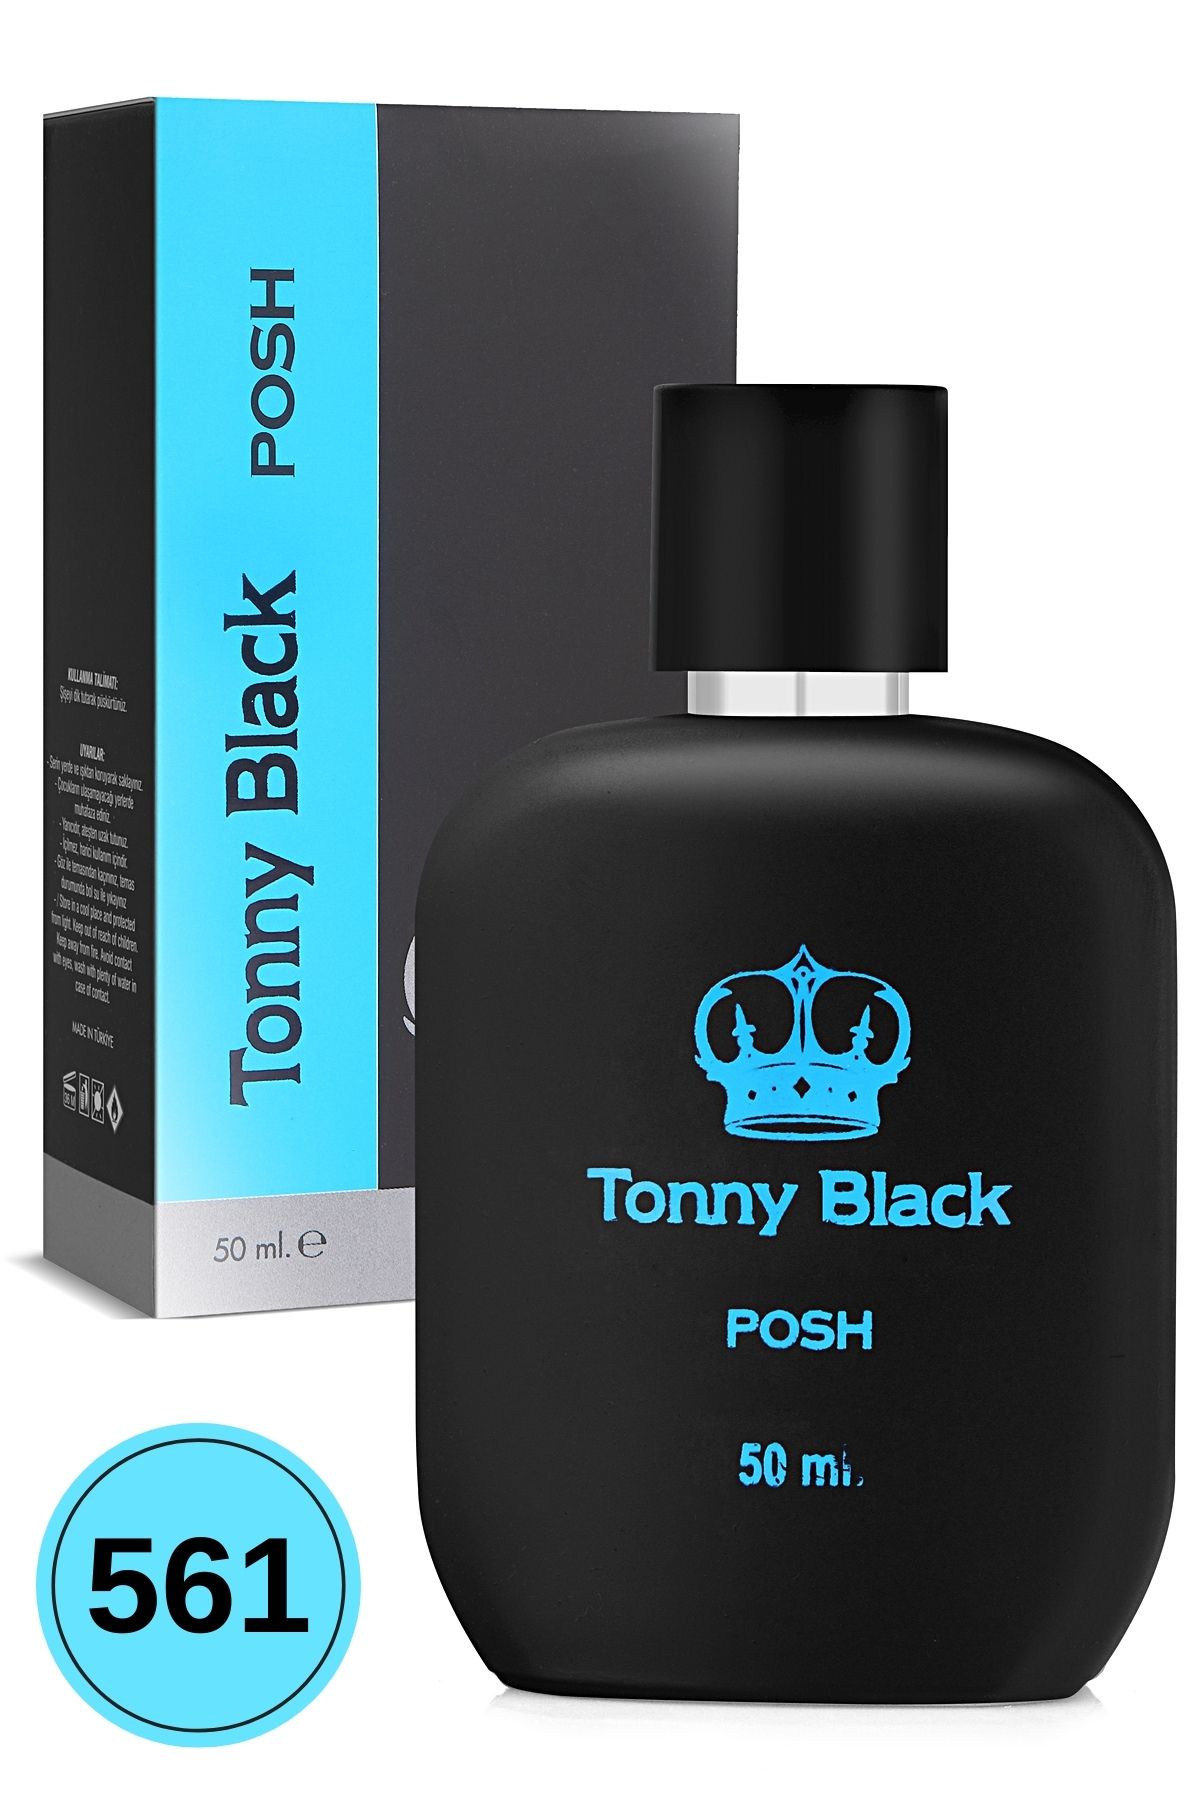 Tonny Black Orijinal Erkek 561 Özel Seri Uzun Süre Kalıcı Etkili Posh Özel Serisi Lüks Erkek Parfüm 50ml